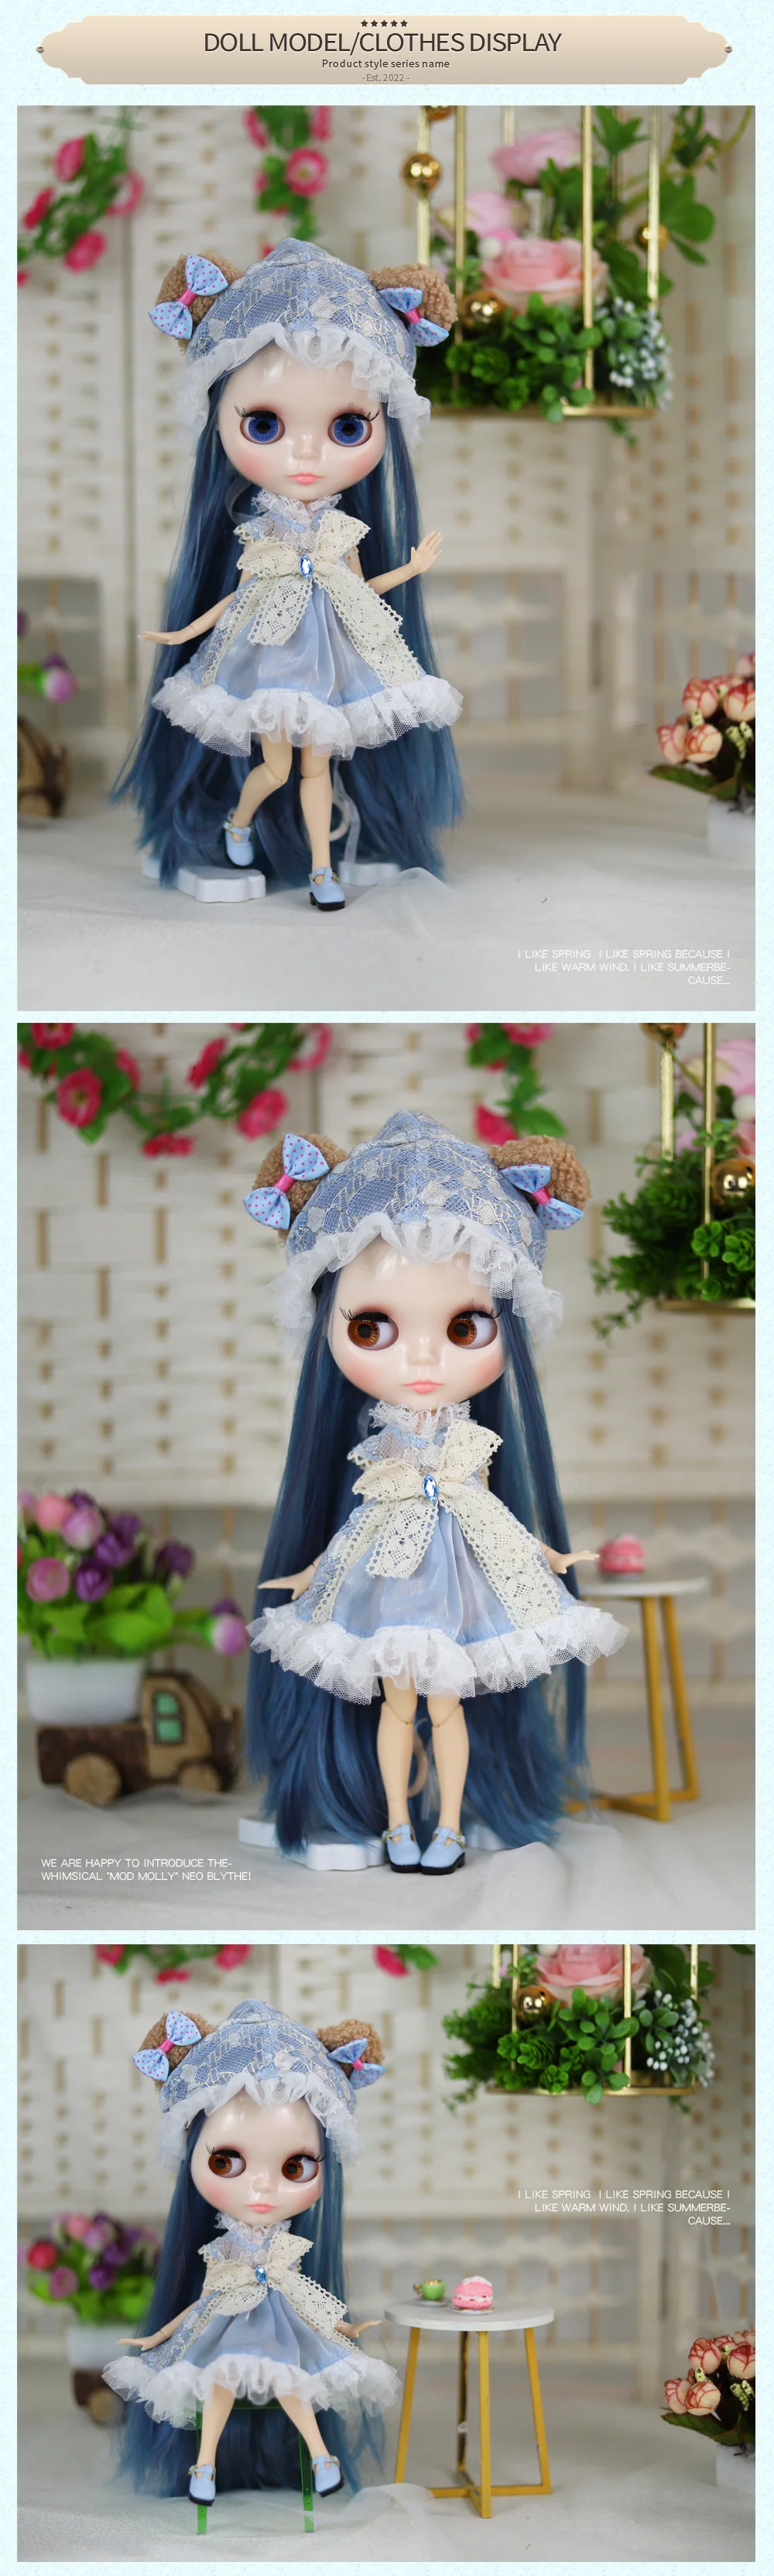 Avellana – Premium Custom Neo Blythe Muñeca con cabello azul, piel blanca y cara linda brillante 3